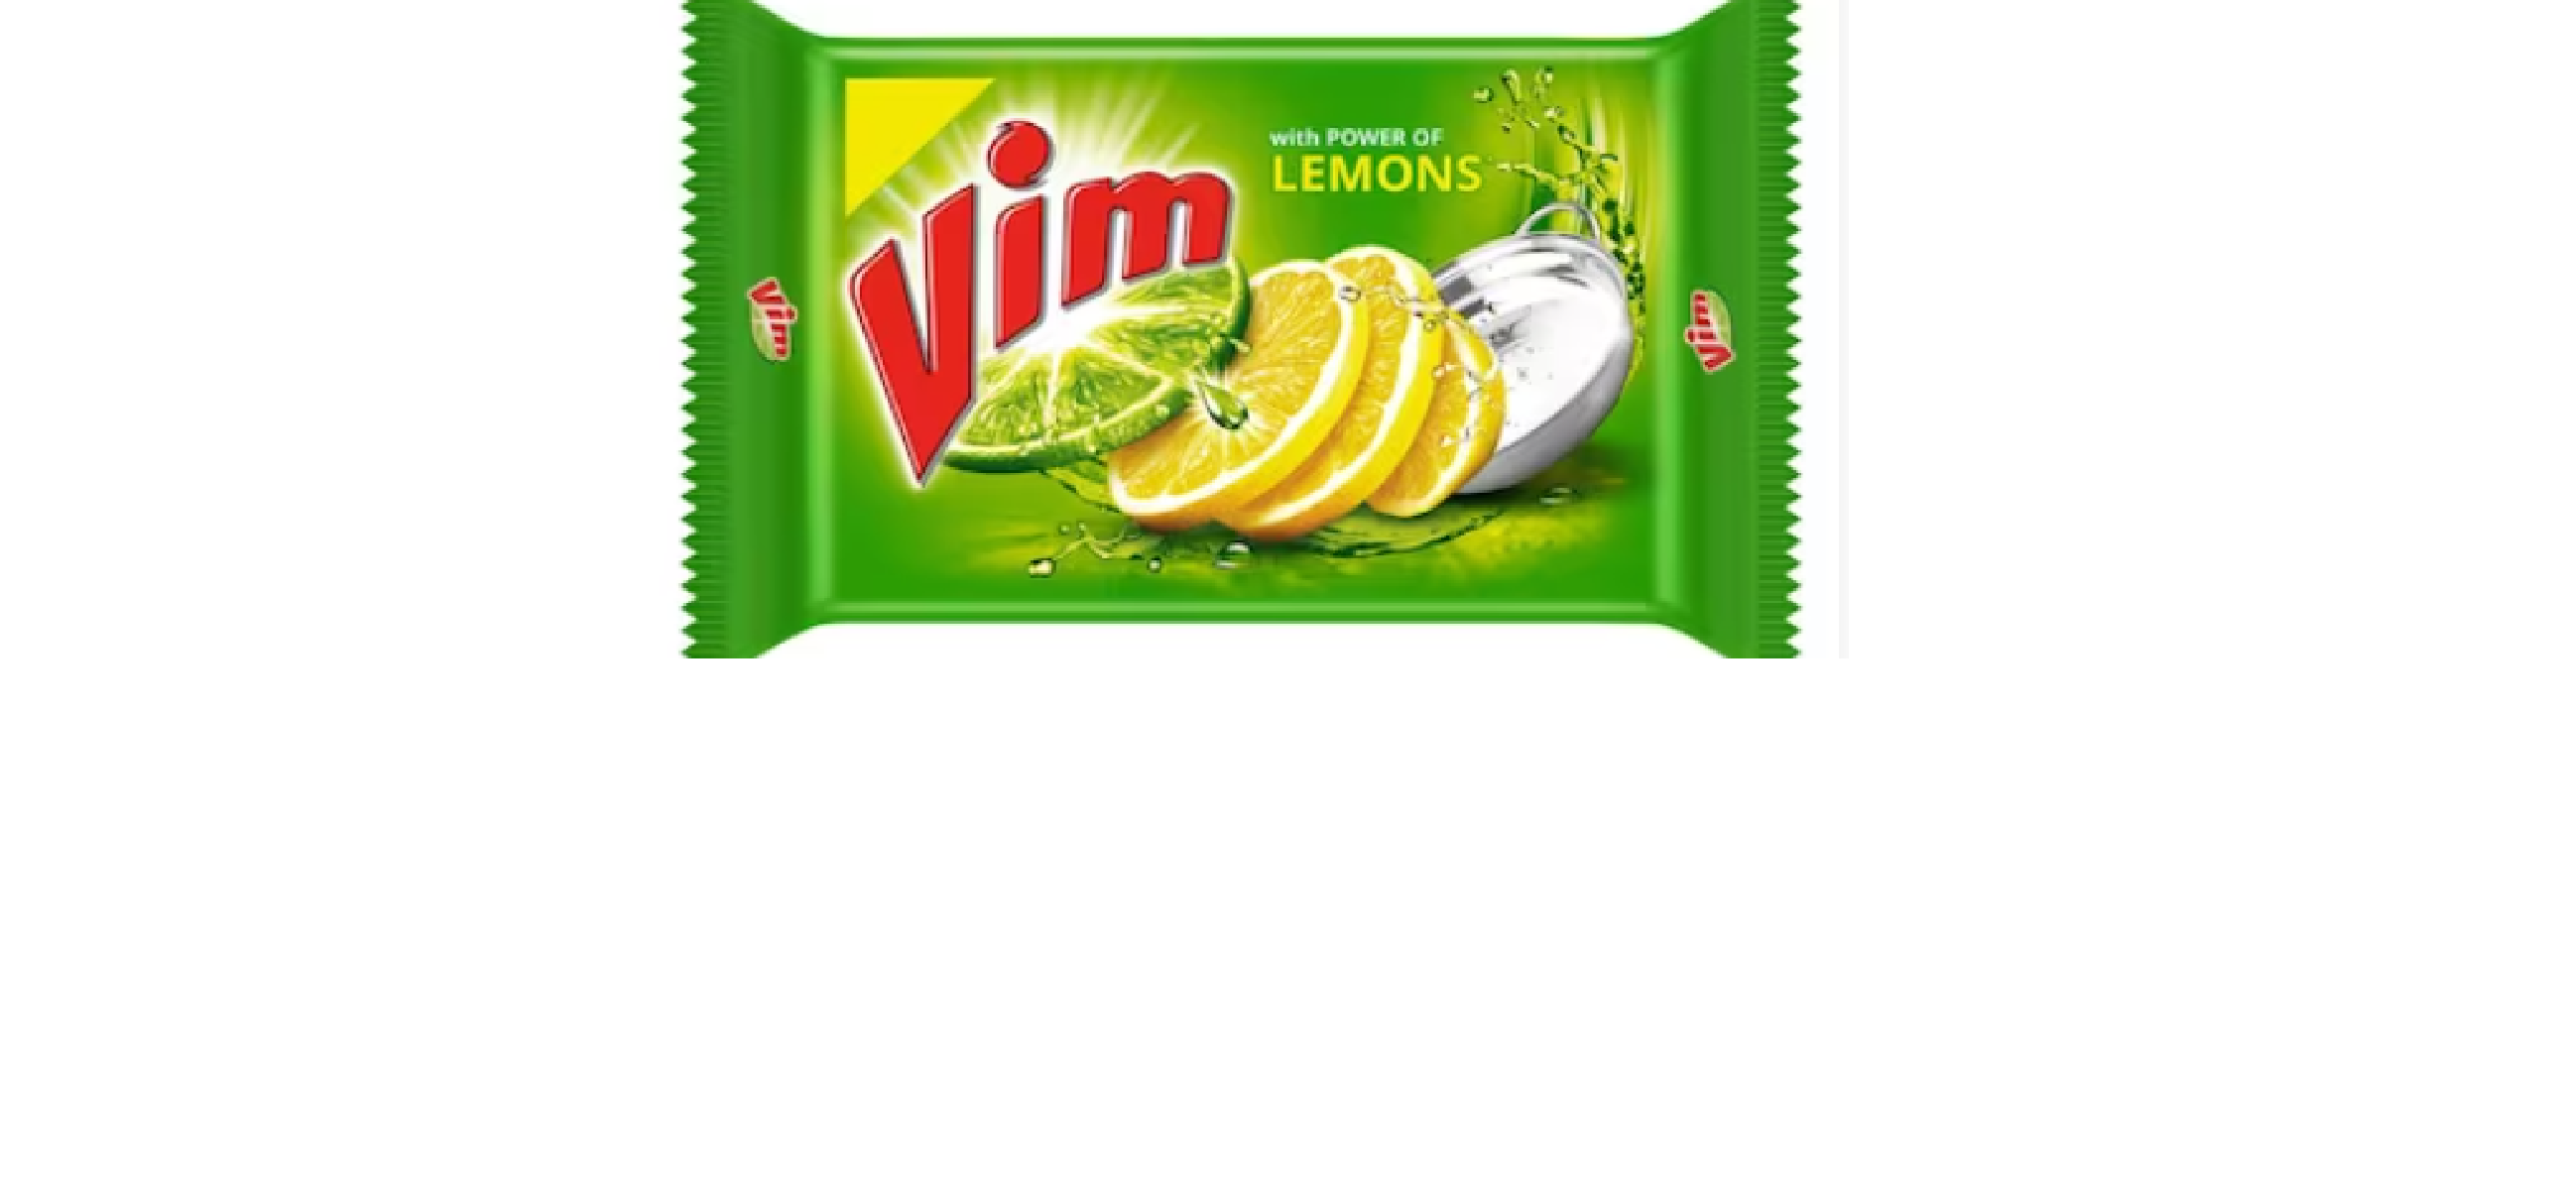 Vim Lemon Dishwash Bar -135g